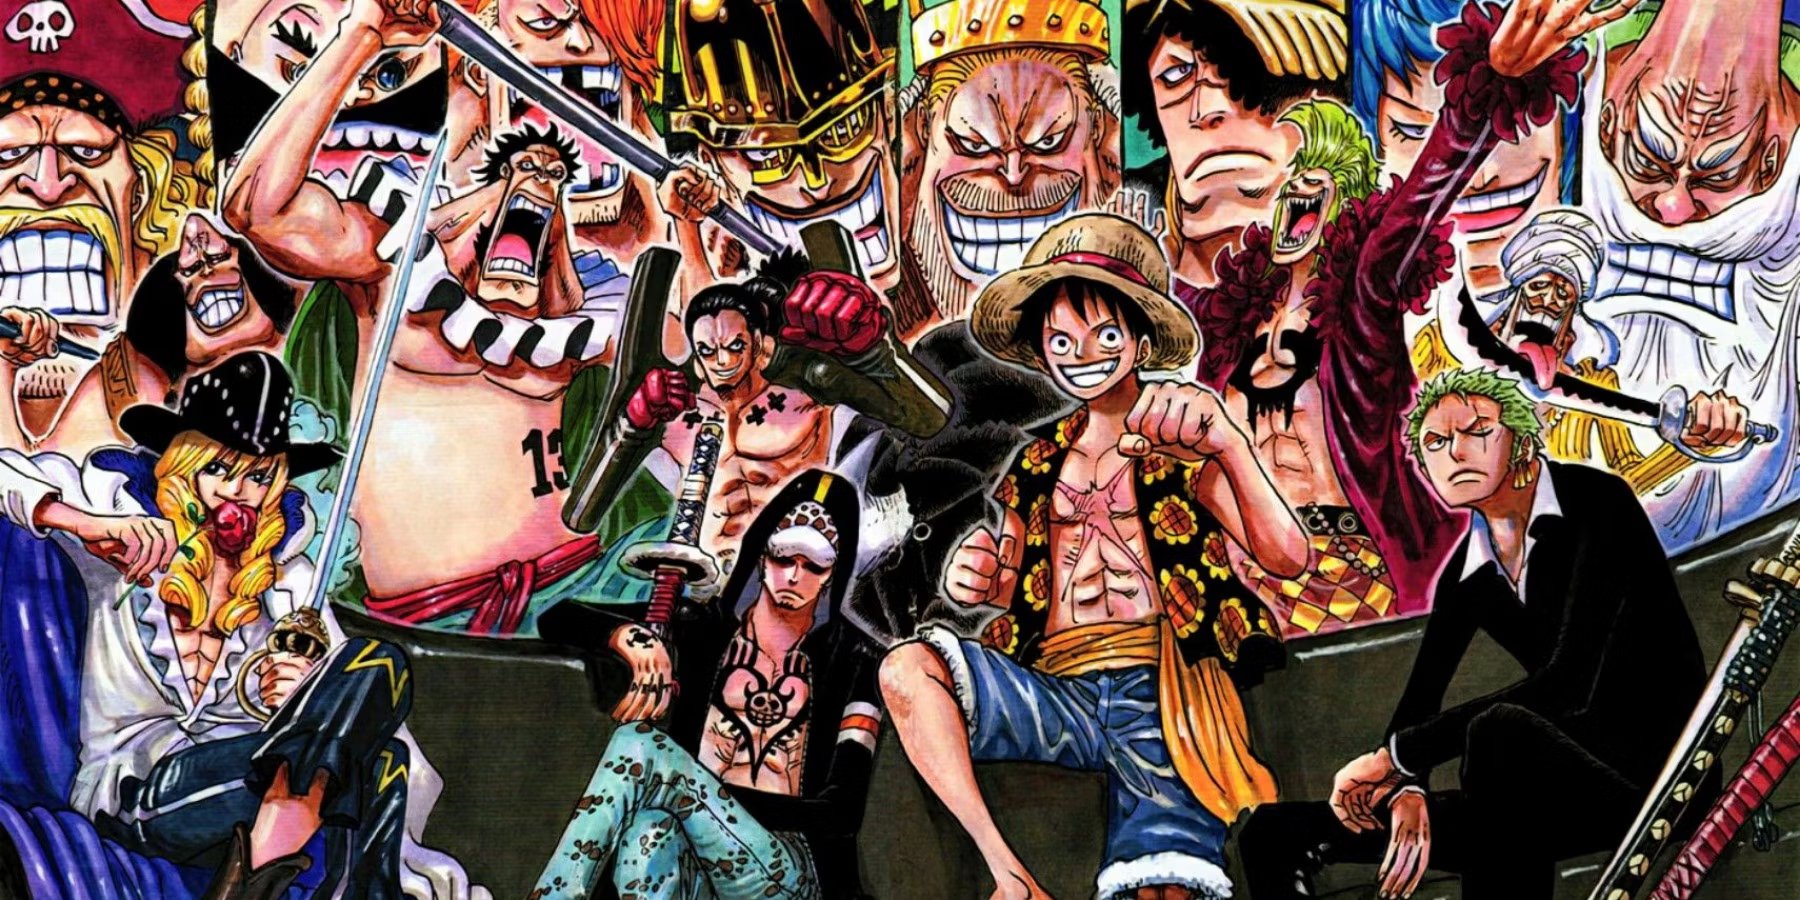 Artista Imaginou Vers Es Super Realistas Dos Personagens De One Piece E